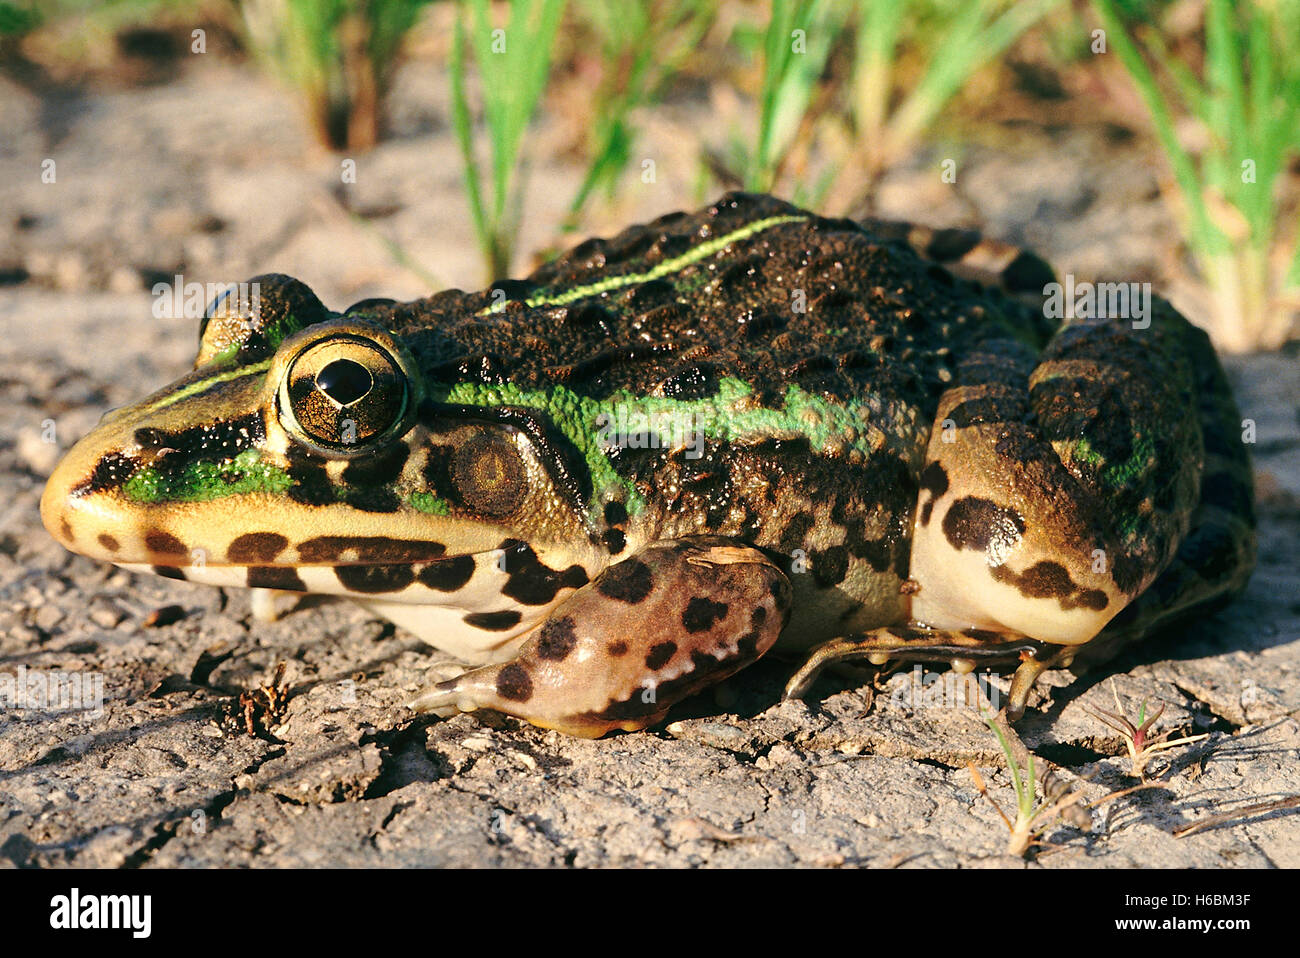 Hoplobatrachus tigerinus. indischen Bull Frog. Ein großer Frosch häufig in Reisfeldern und in der Nähe von Teichen gefunden. Stockfoto